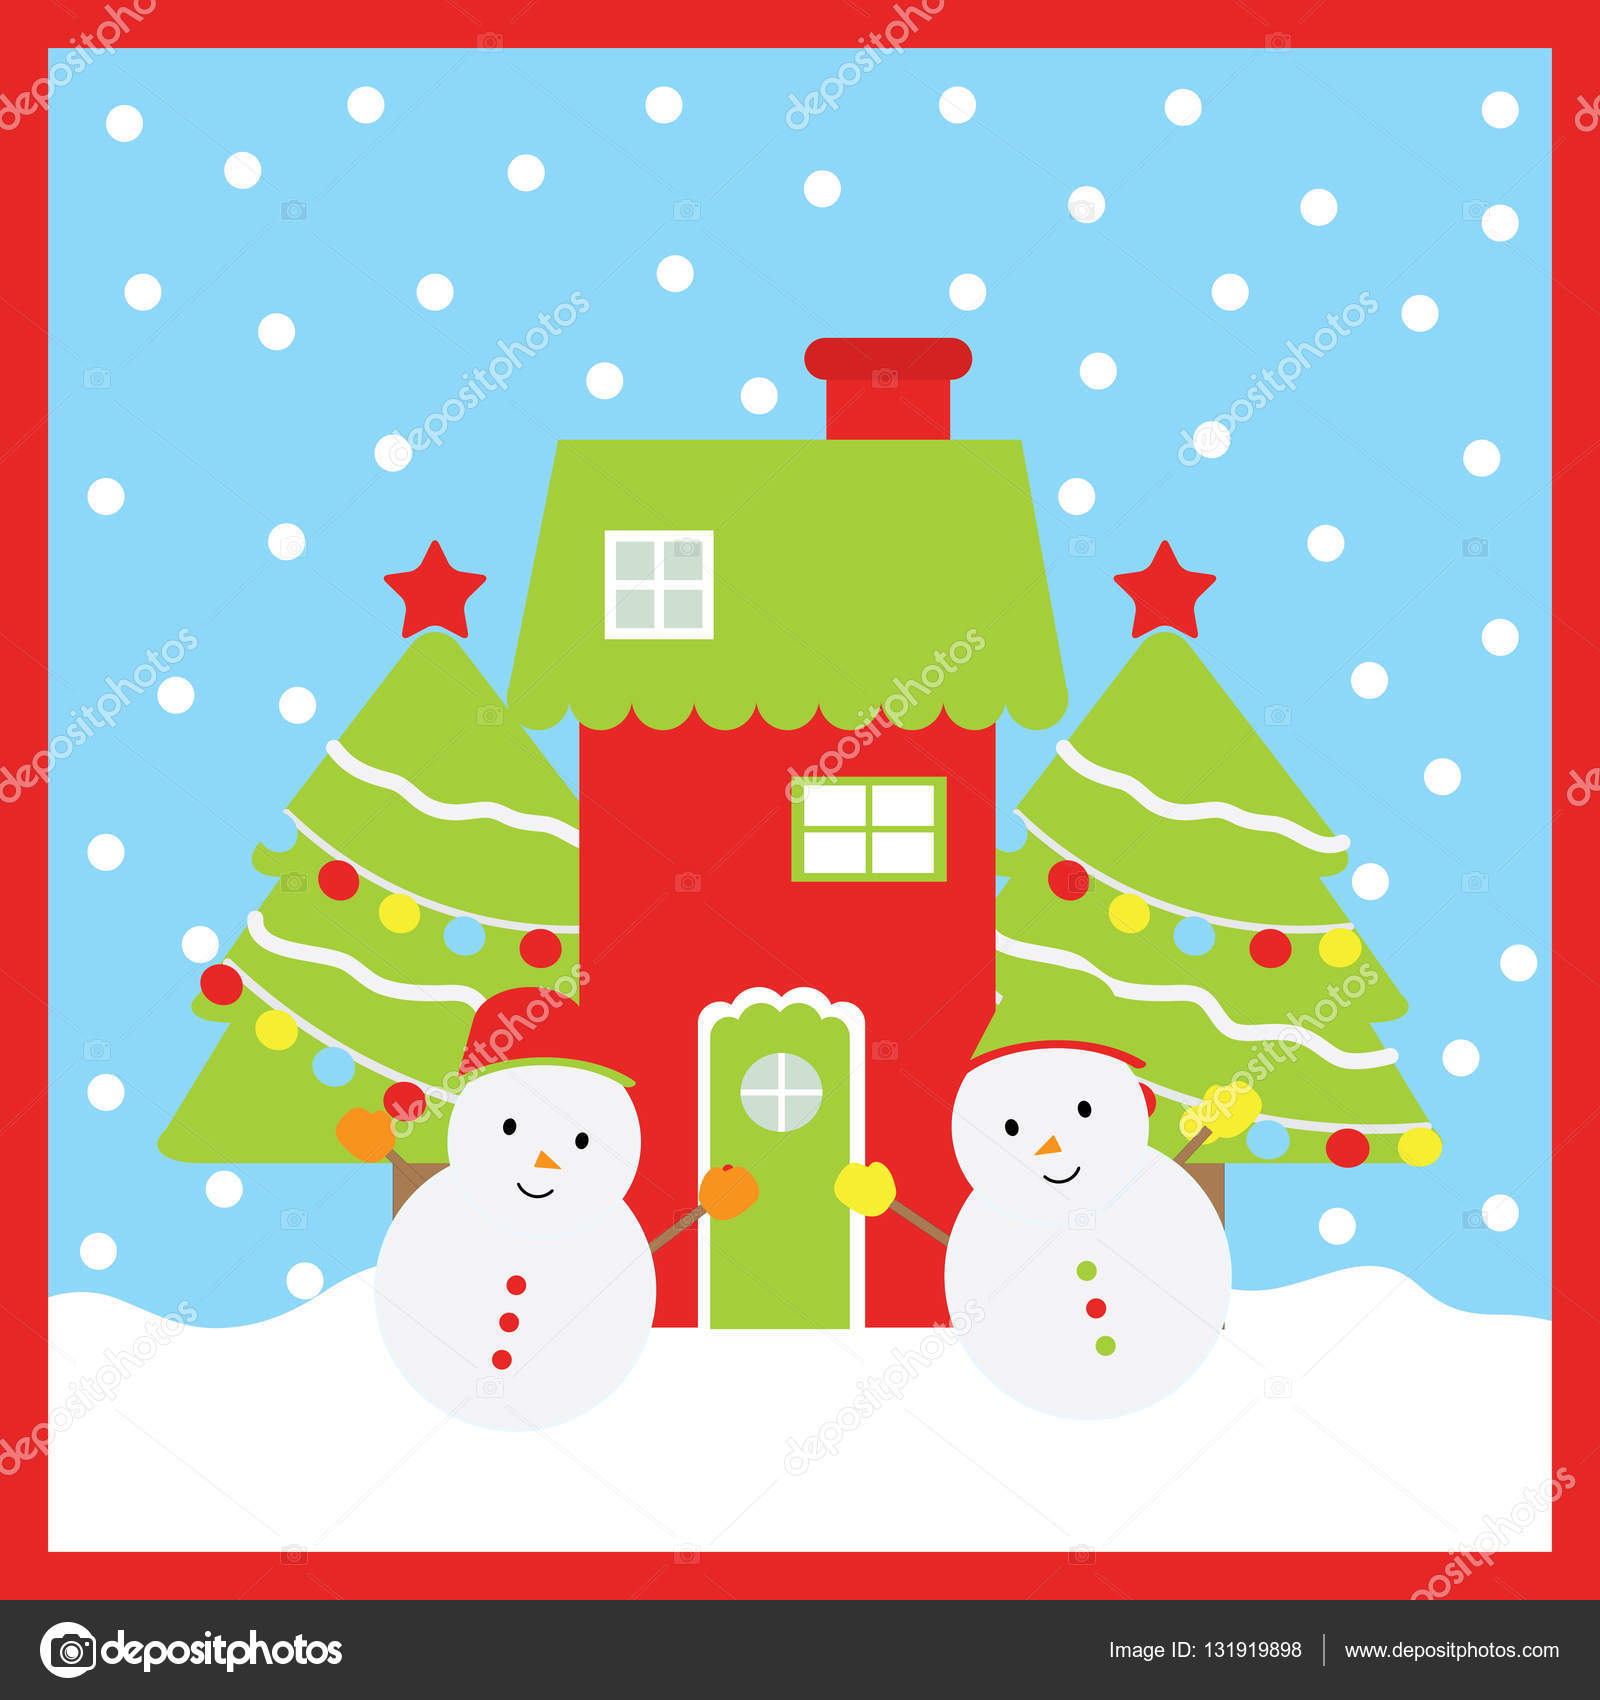 クリスマス イラストかわいい雪だるま クリスマス ツリー かわいい家の子供の壁紙 ポストカード クリスマスのグリーティング カードに適して ストックベクター C Saidi21ns 131919898